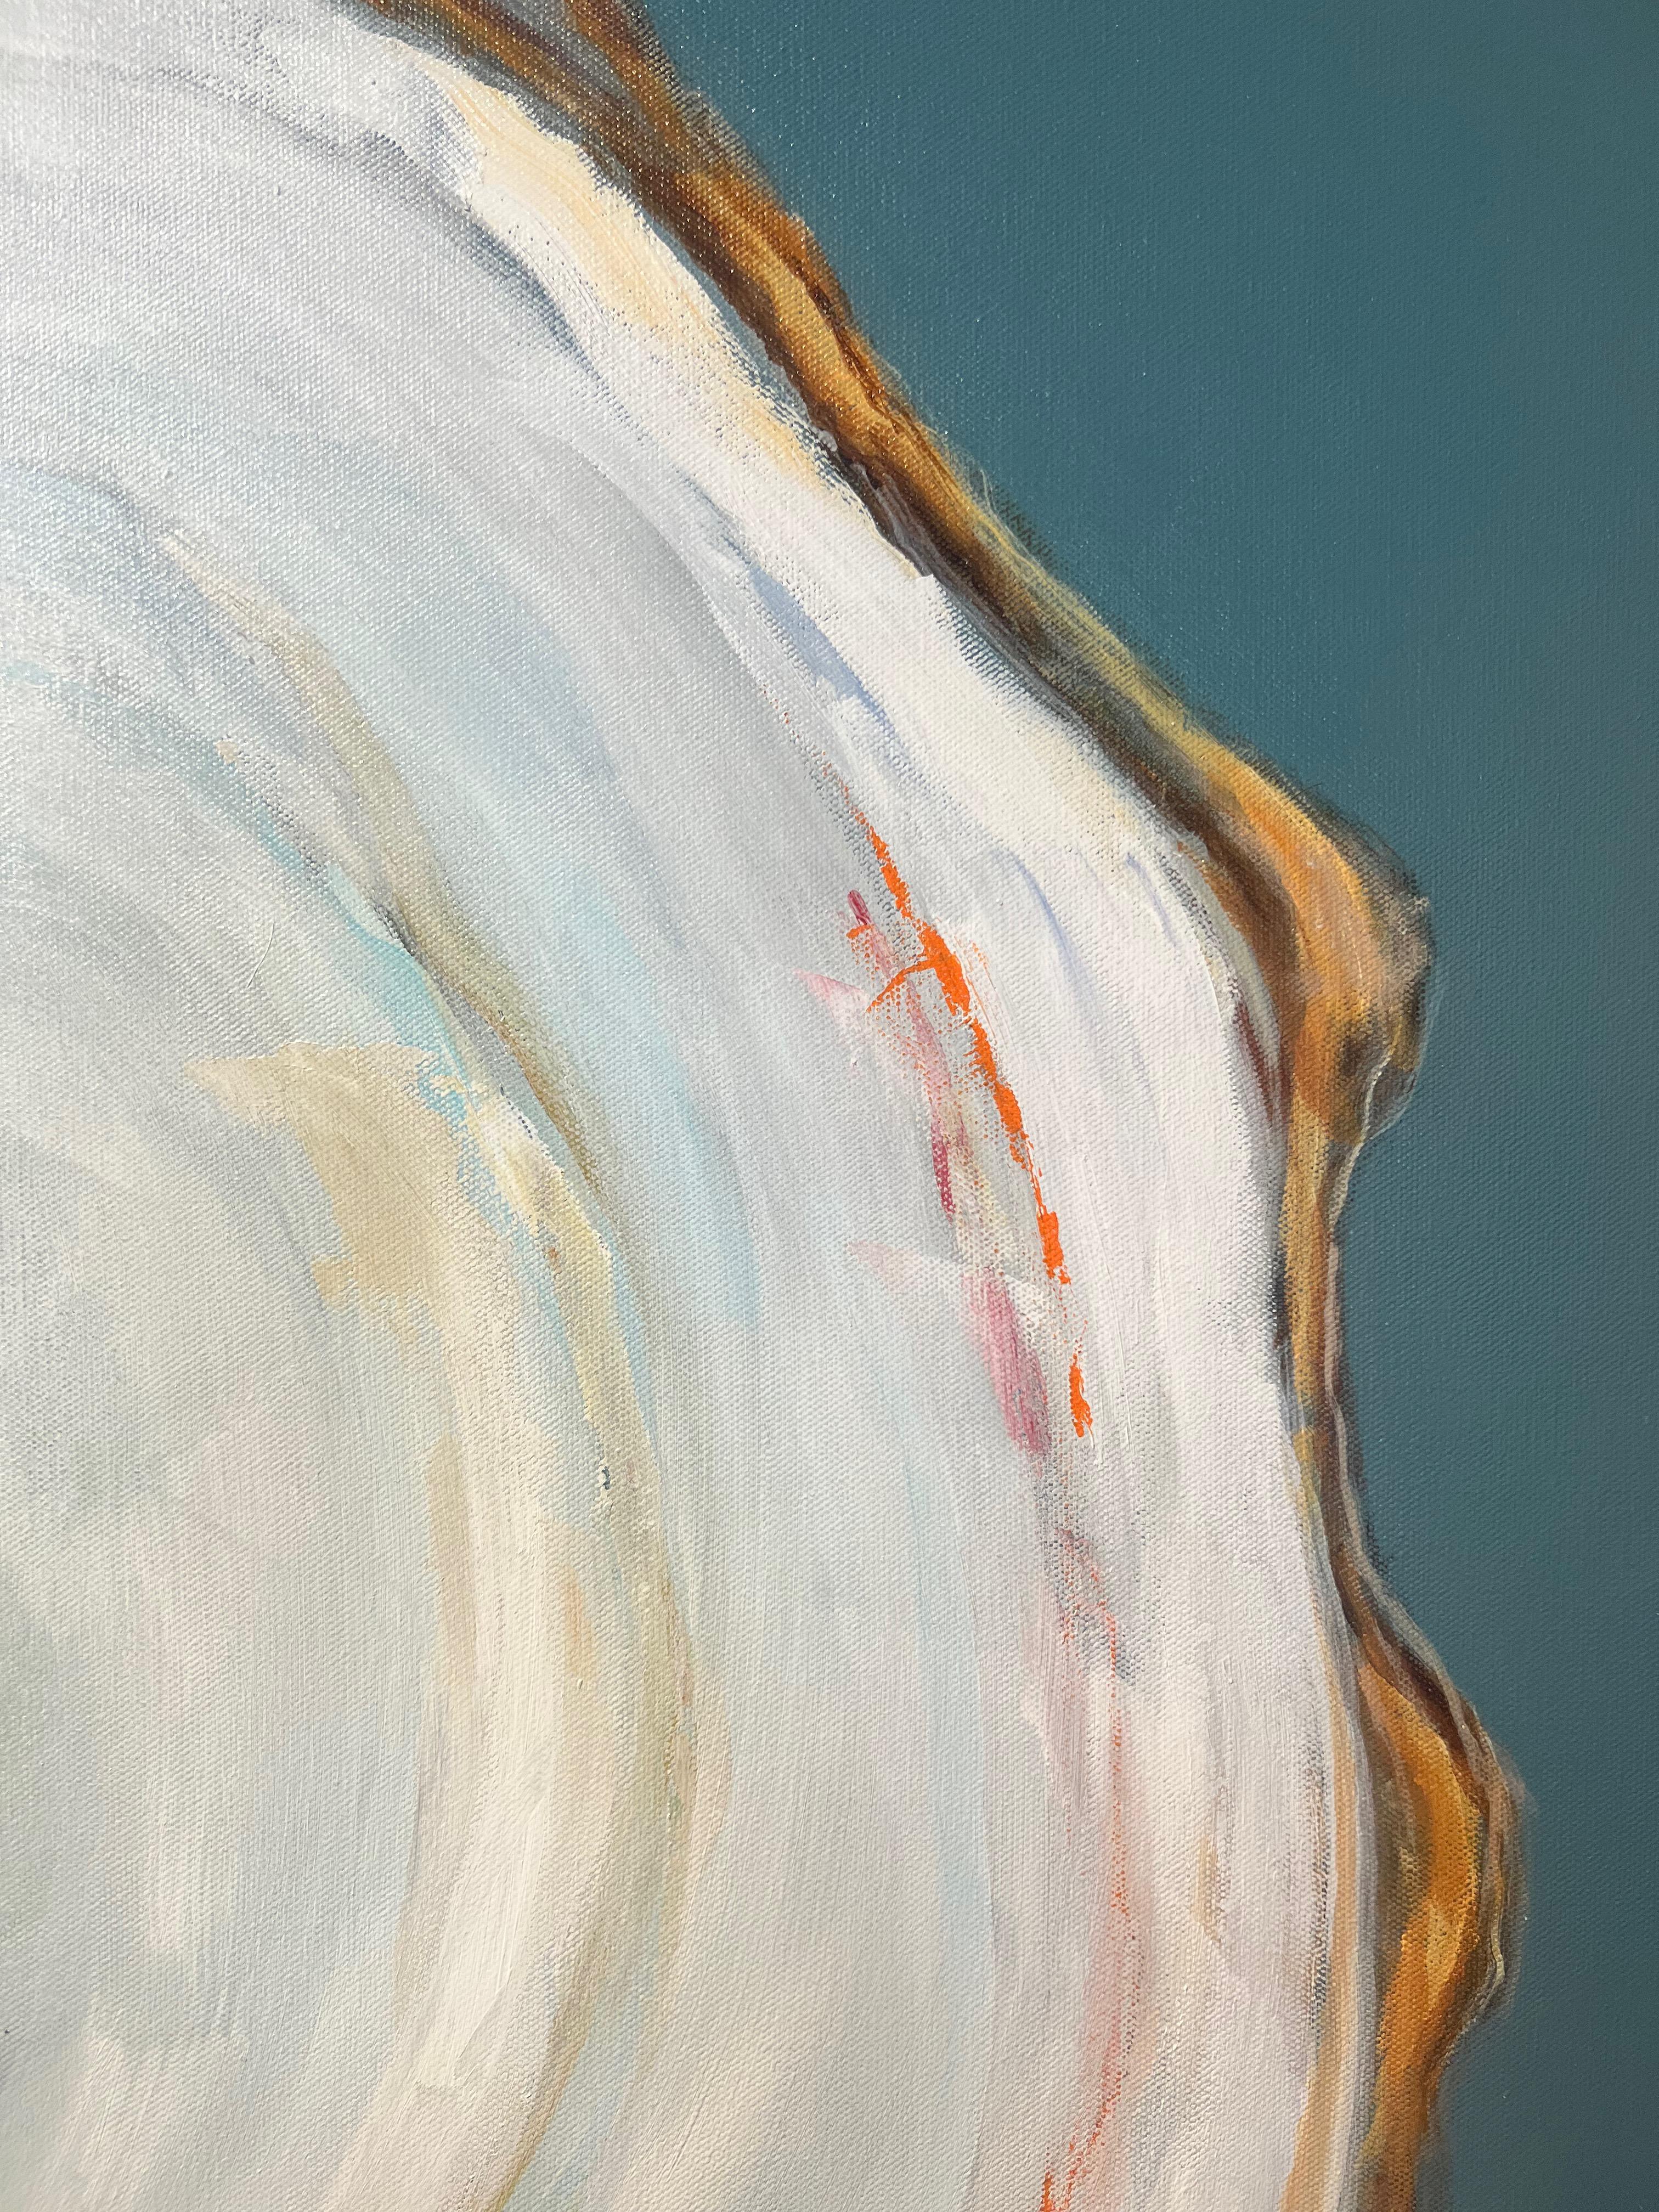 Peinture à l'huile d'un seul huîtres blanc sur fond gris foncé « Oyster Creek » - Painting de Anne Harney